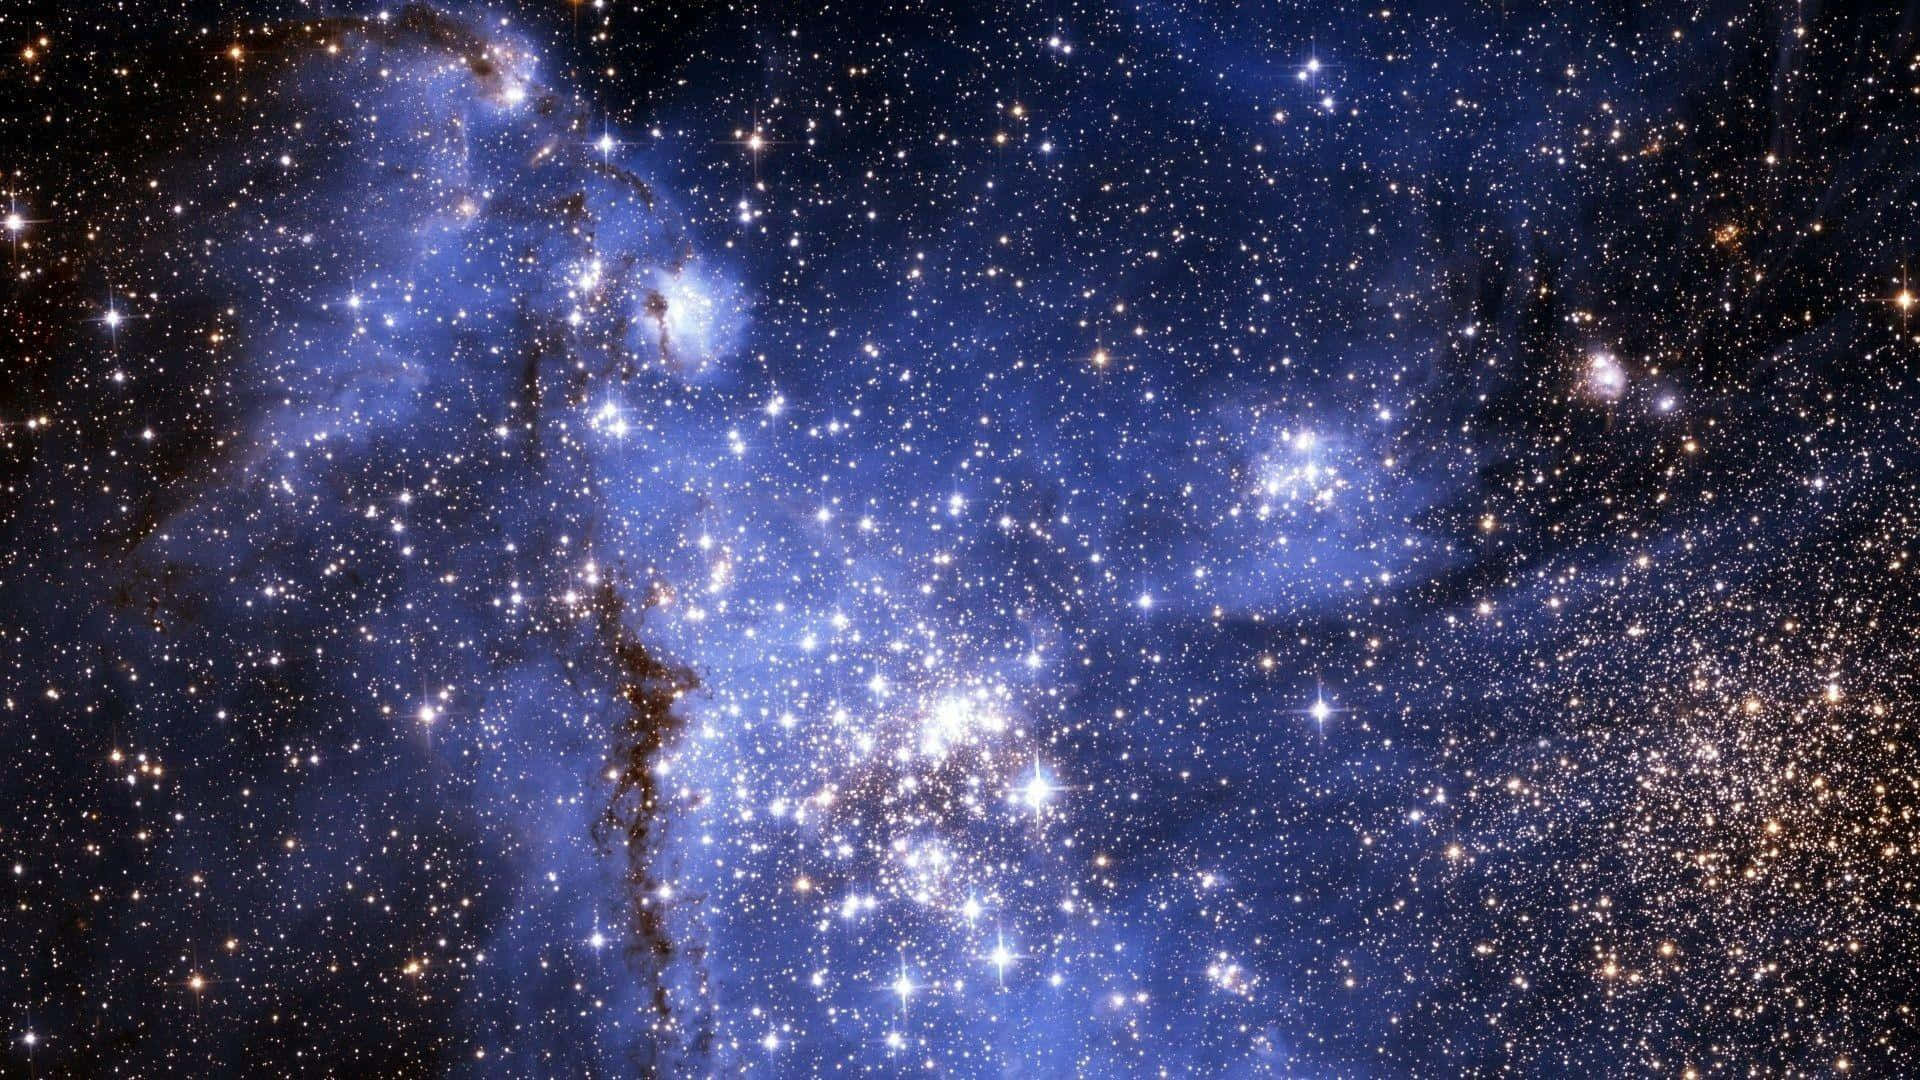 Stjernebilleder i en nattehimmel